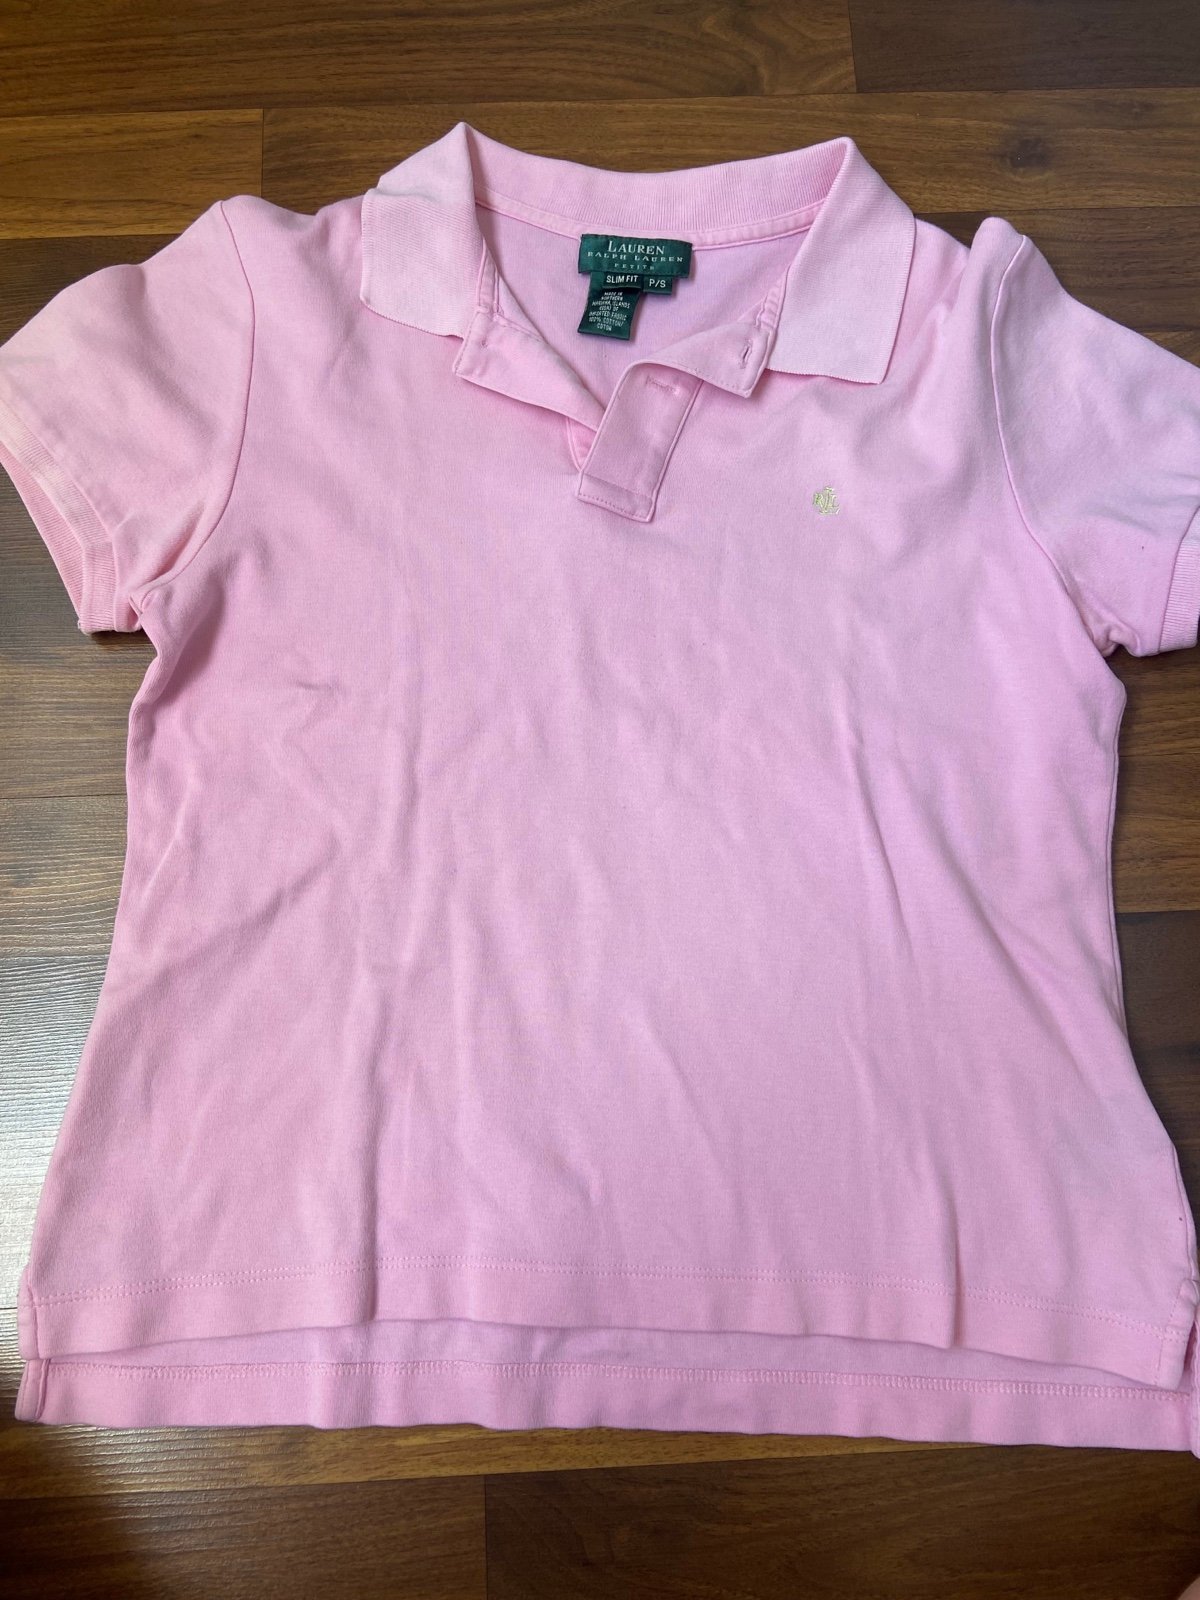 Comfortable Polo Ralph Lauren short sleeve shirts for women LU4KPeCmu Store Online